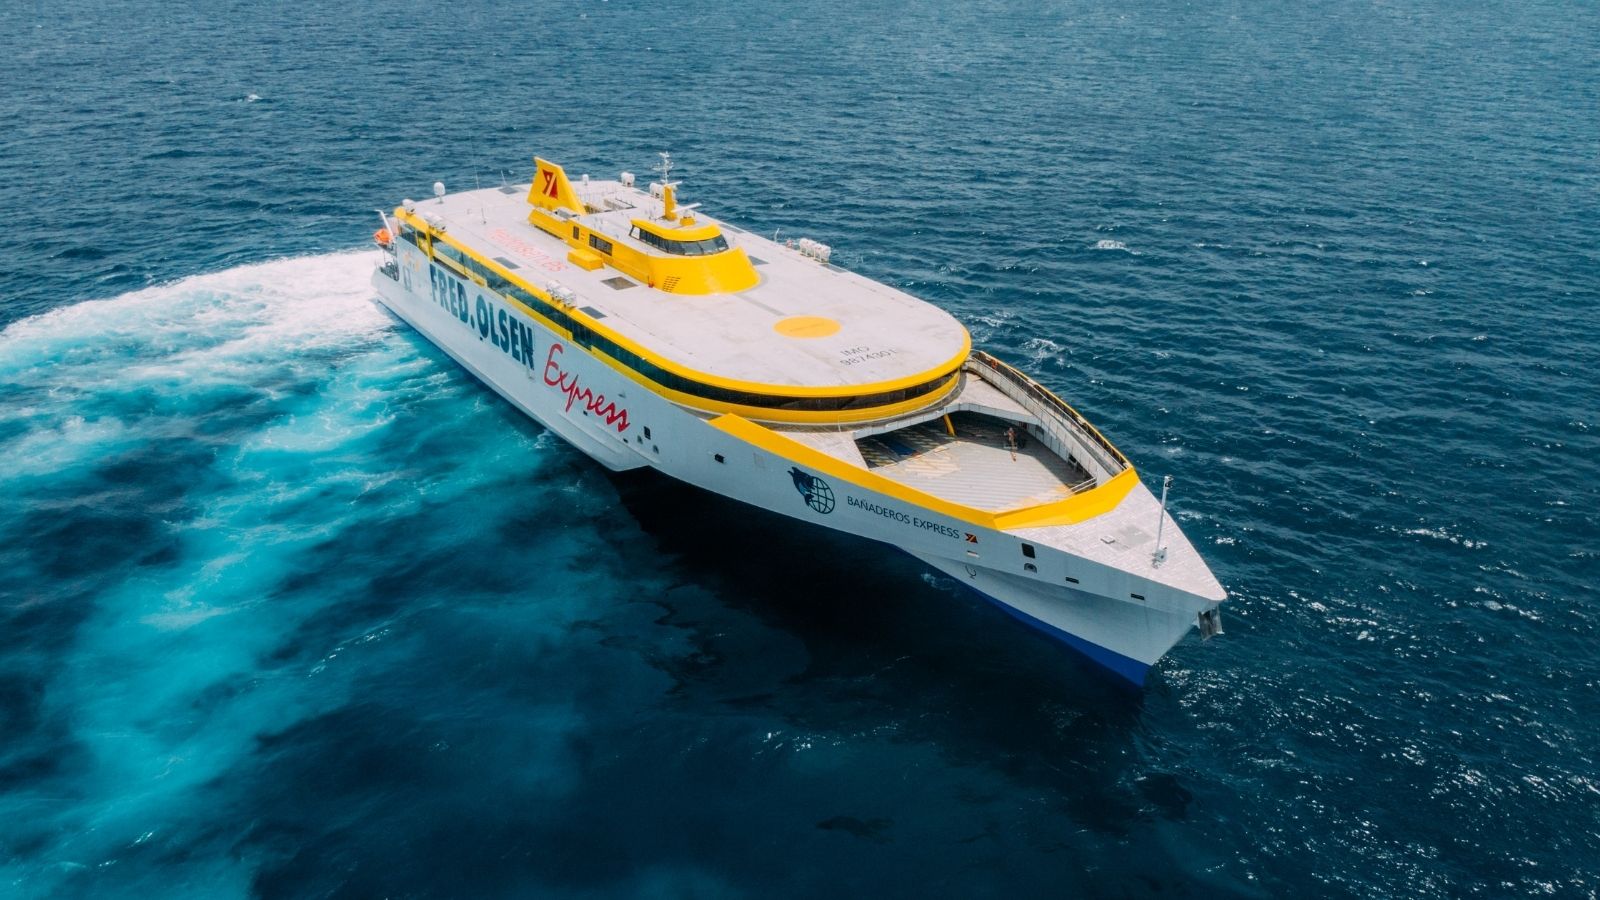 Il nuovo trimarano Bañaderos Express completa le sue prove in mare